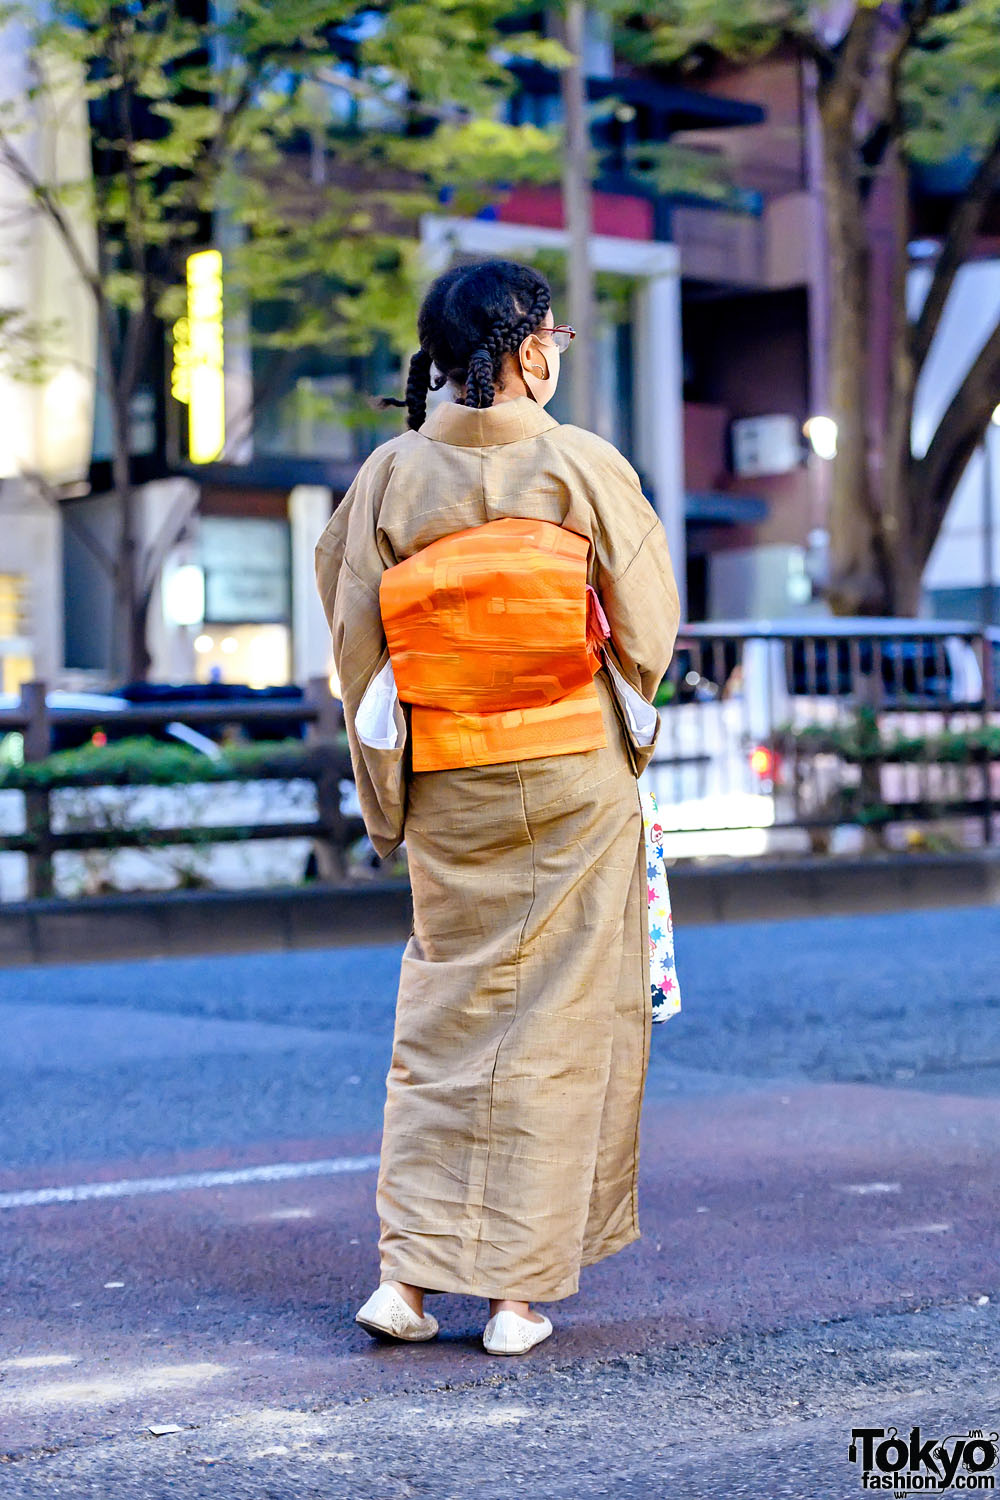 Harajuku Designer in Vintage Kimono, Splatoon 2 x Sanrio Bag